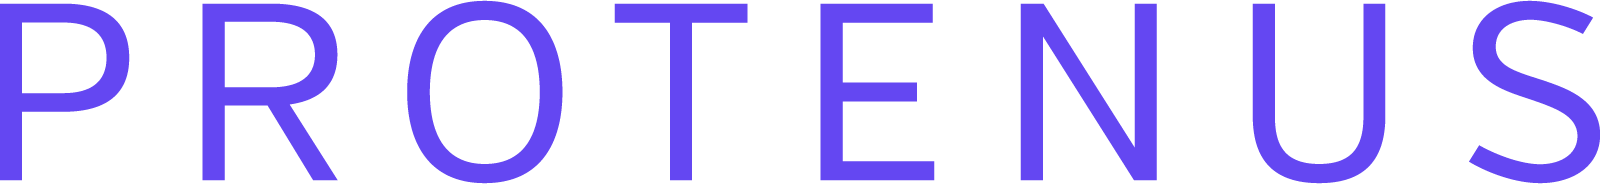 Protenus, Inc. logo